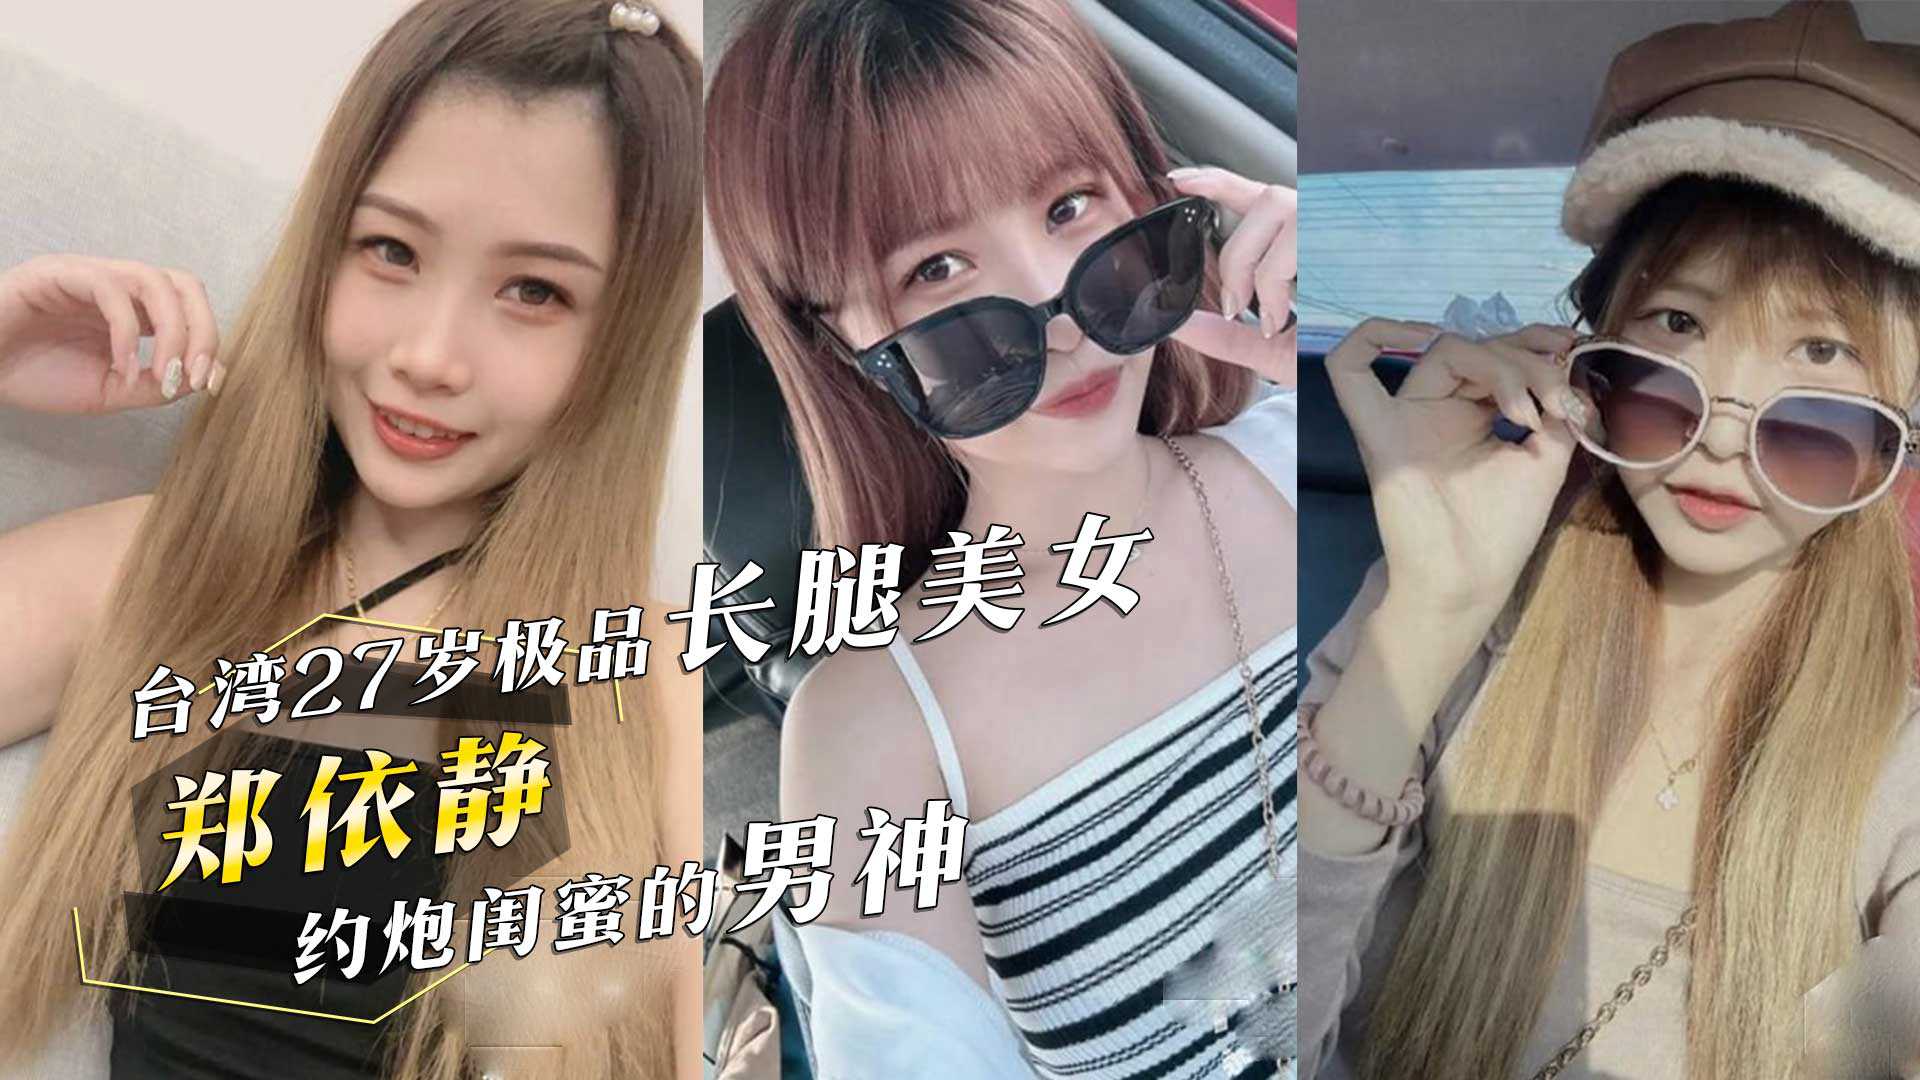 Đài Loan 27 tuổi cực phẩm chân dài người đẹp 'Trung Bình' về súng nữ thần cũng chia sẻ video quá khứ!